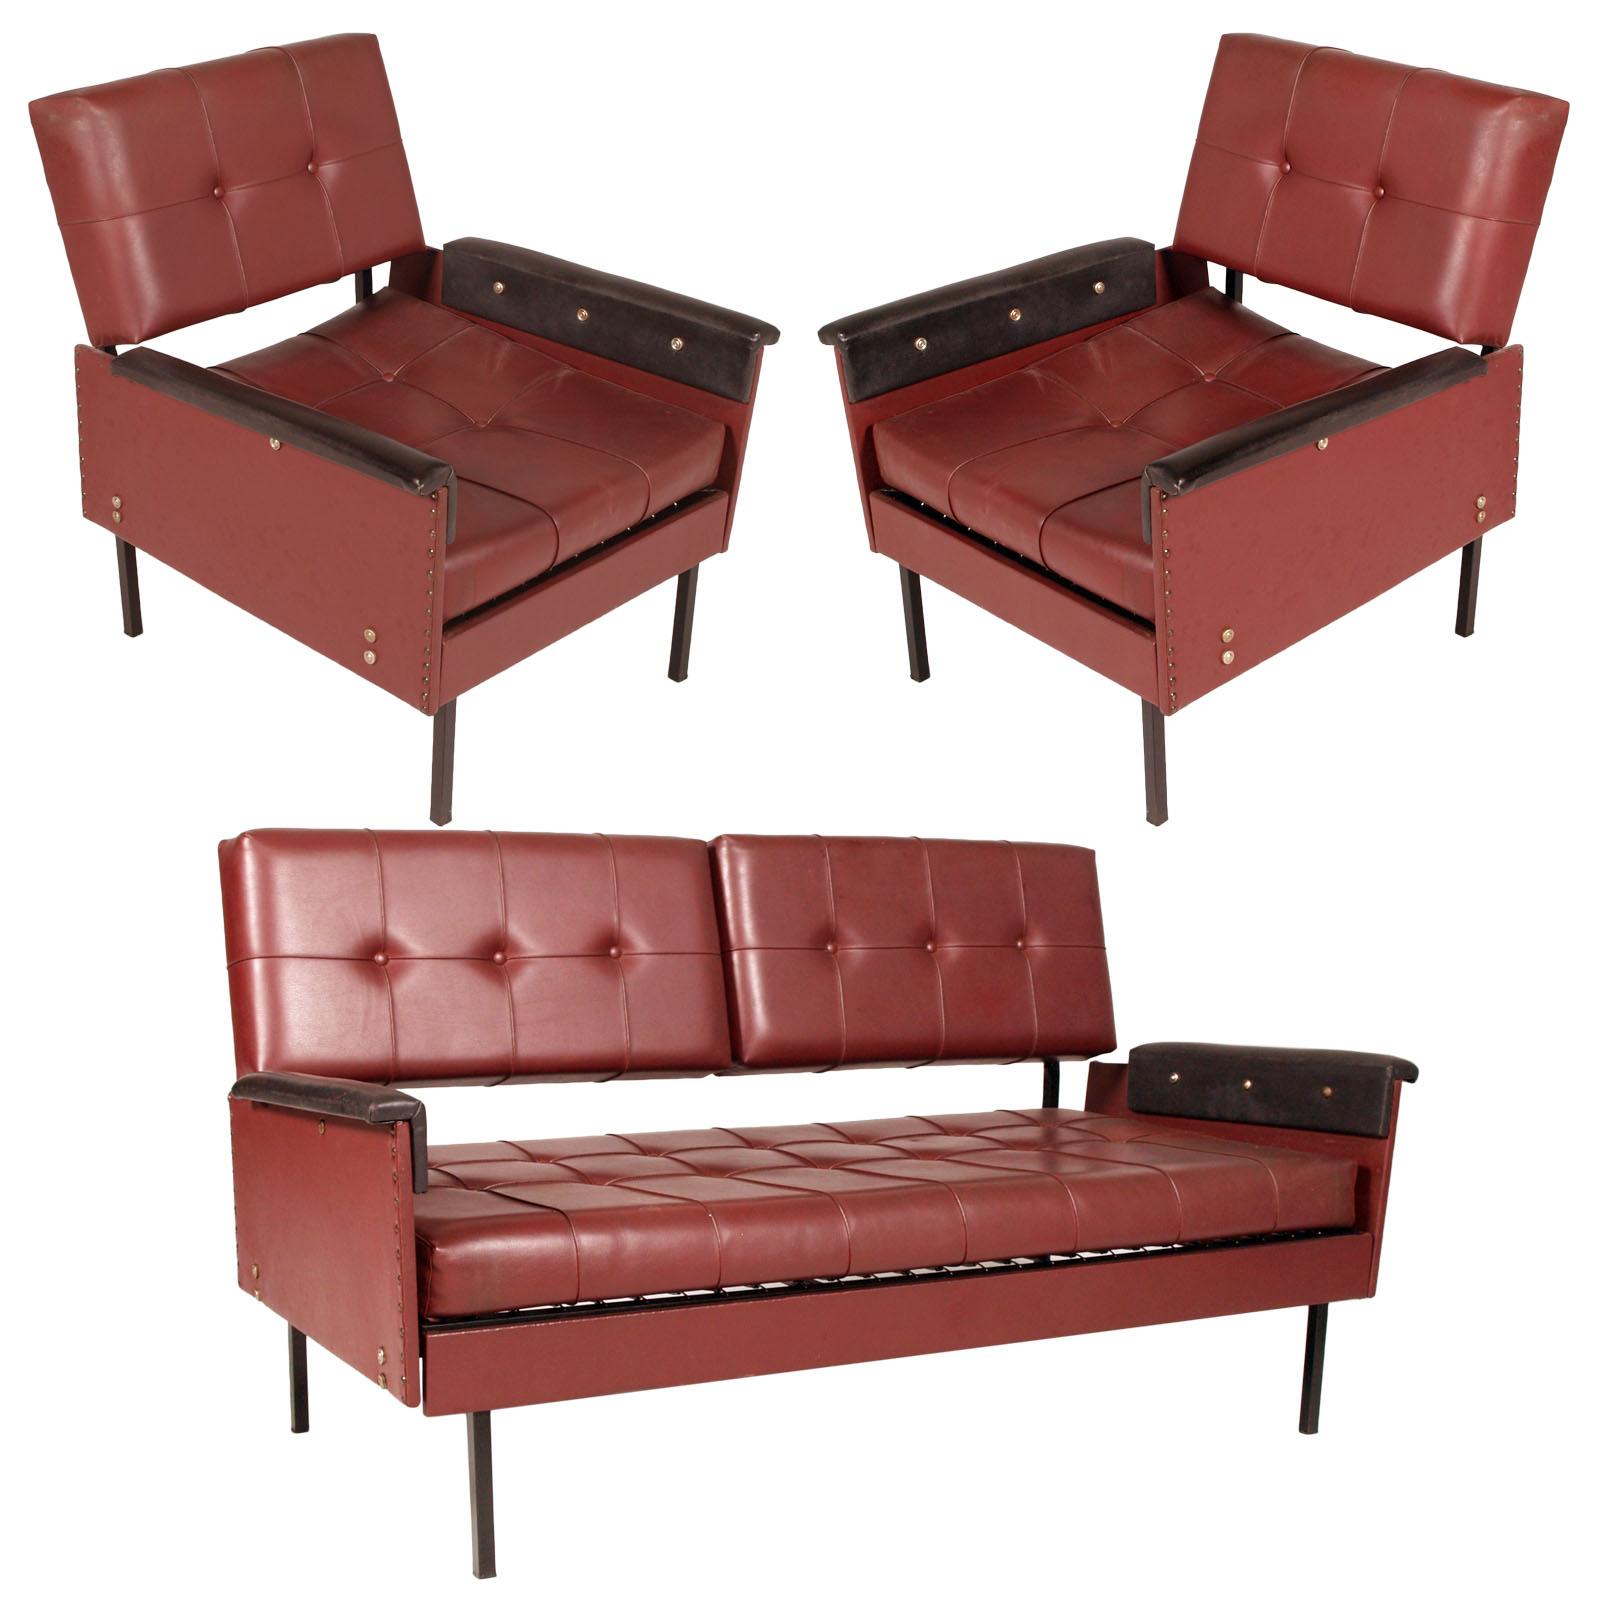 Kubistische Sessel und Sofa aus den 1960er Jahren, Eisenbeine, Kunstleder gesteppte Polsterung